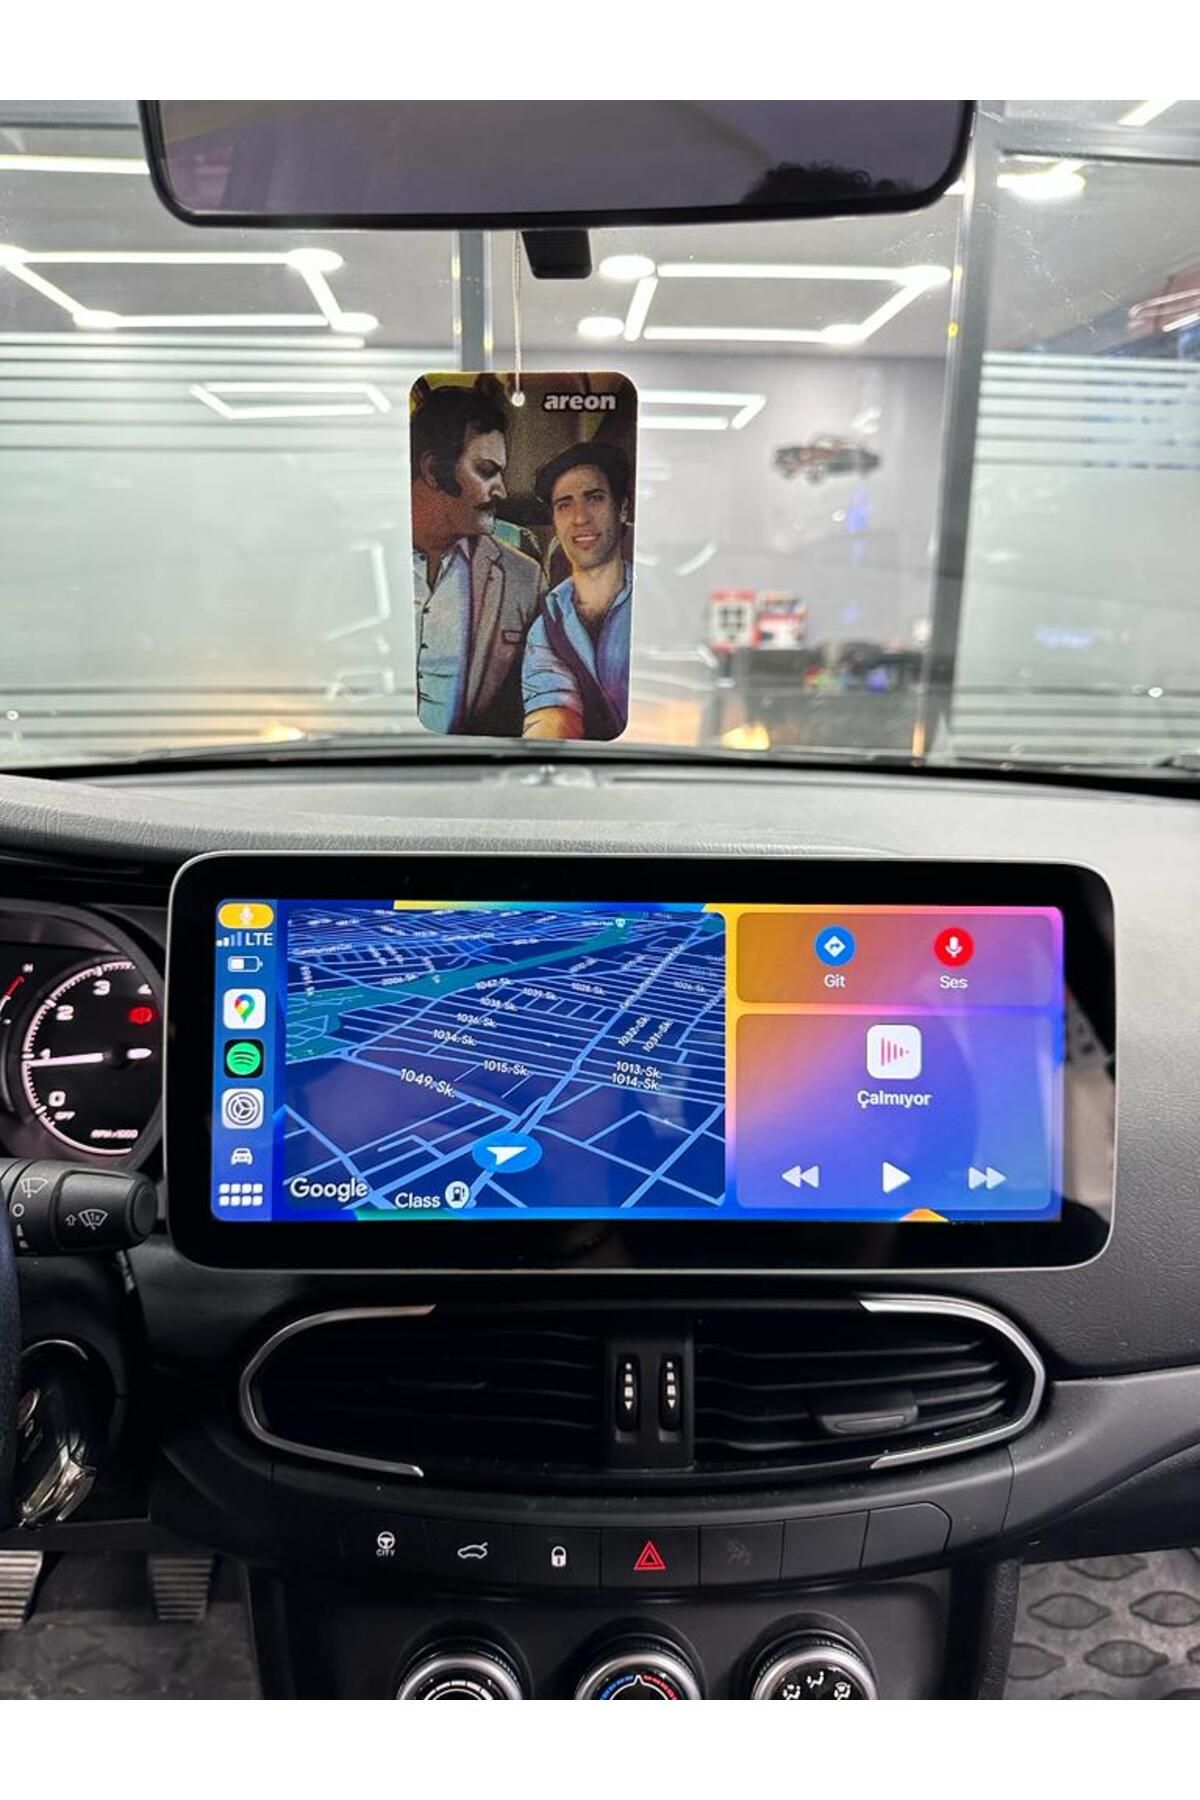 CELALİ TUNİNG Fiat Egea Android 12 Uyumlu Carplay Mercedes Model Navigasyon Multimedya - 2GB Ram 32GB HDD